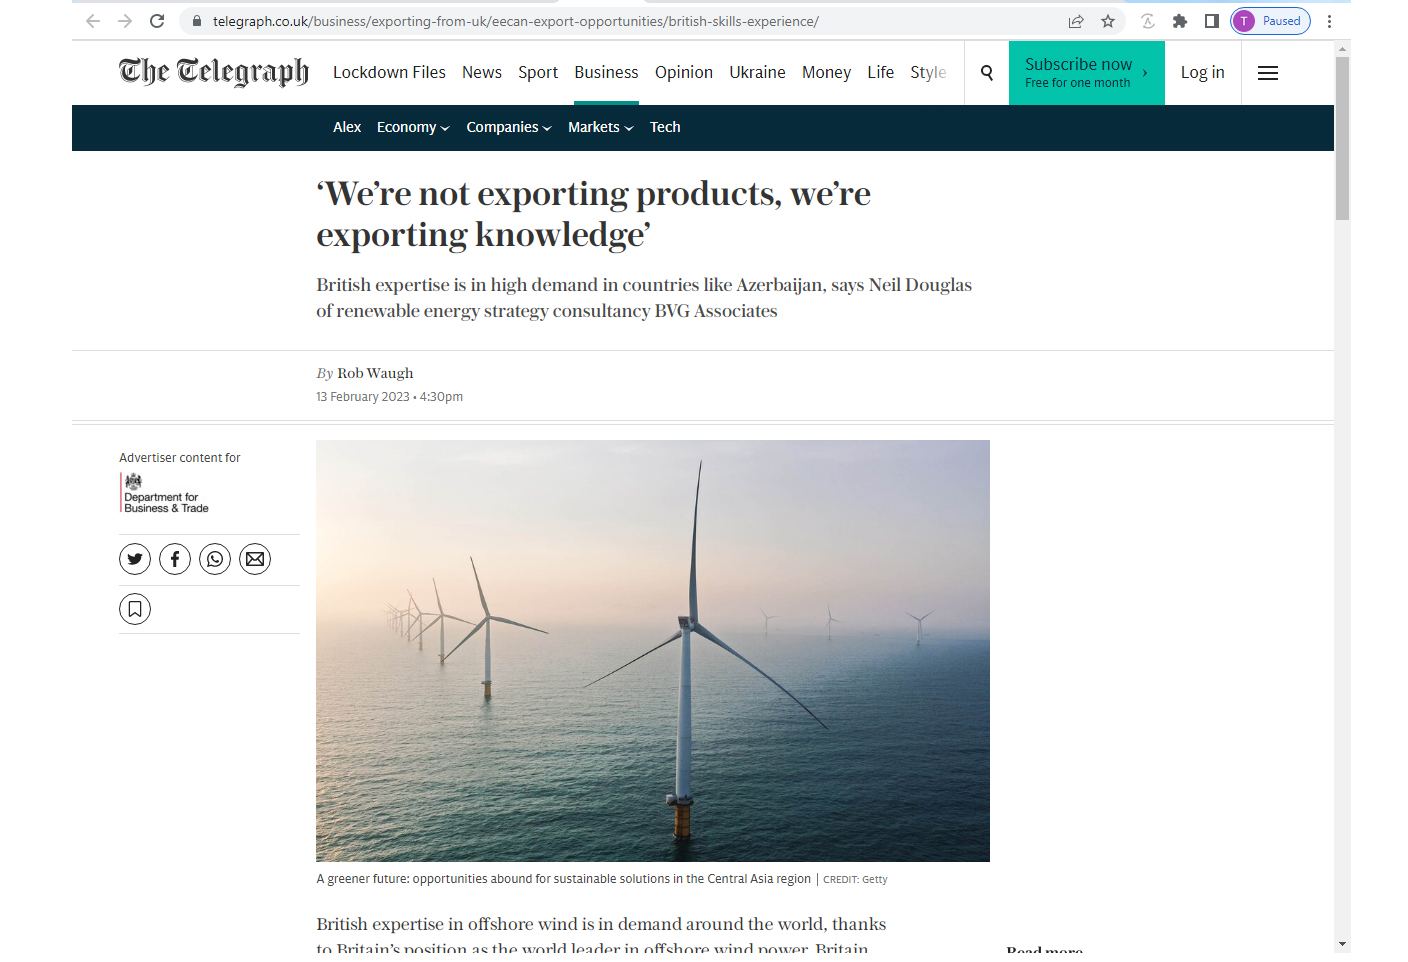 Ветряных ресурсов Каспия достаточно для экспорта "зеленой" энергии из Азербайджана - The Telegraph